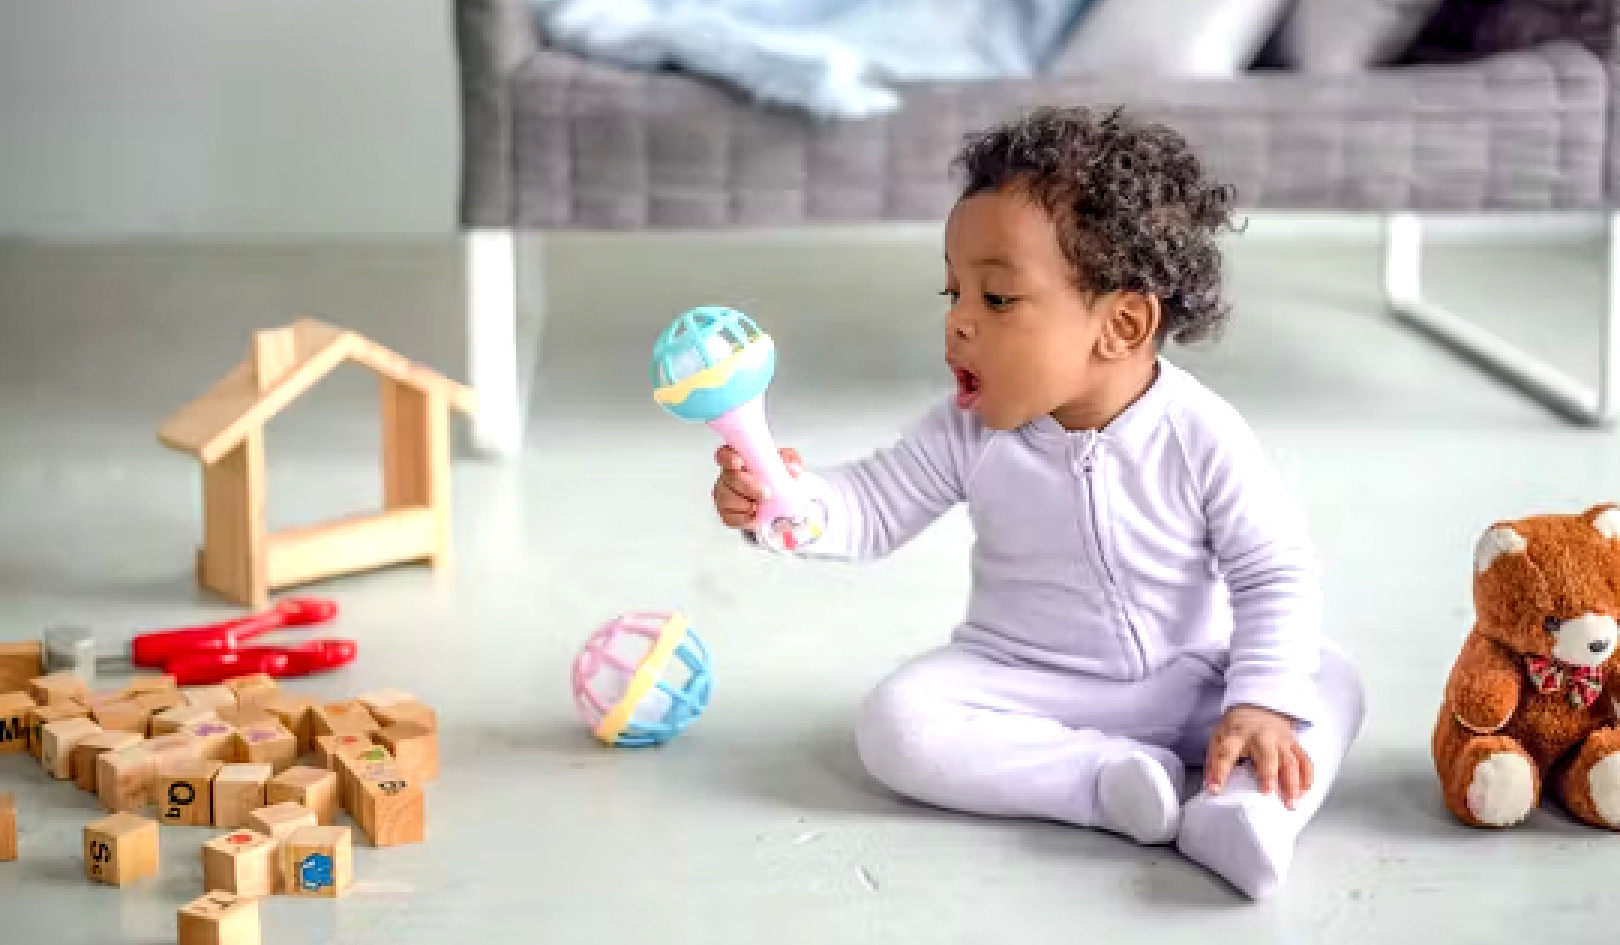 बच्चों के लिए सही खिलौना चुनना: मज़ा और विकास के लिए विज्ञान समर्थित युक्तियाँ